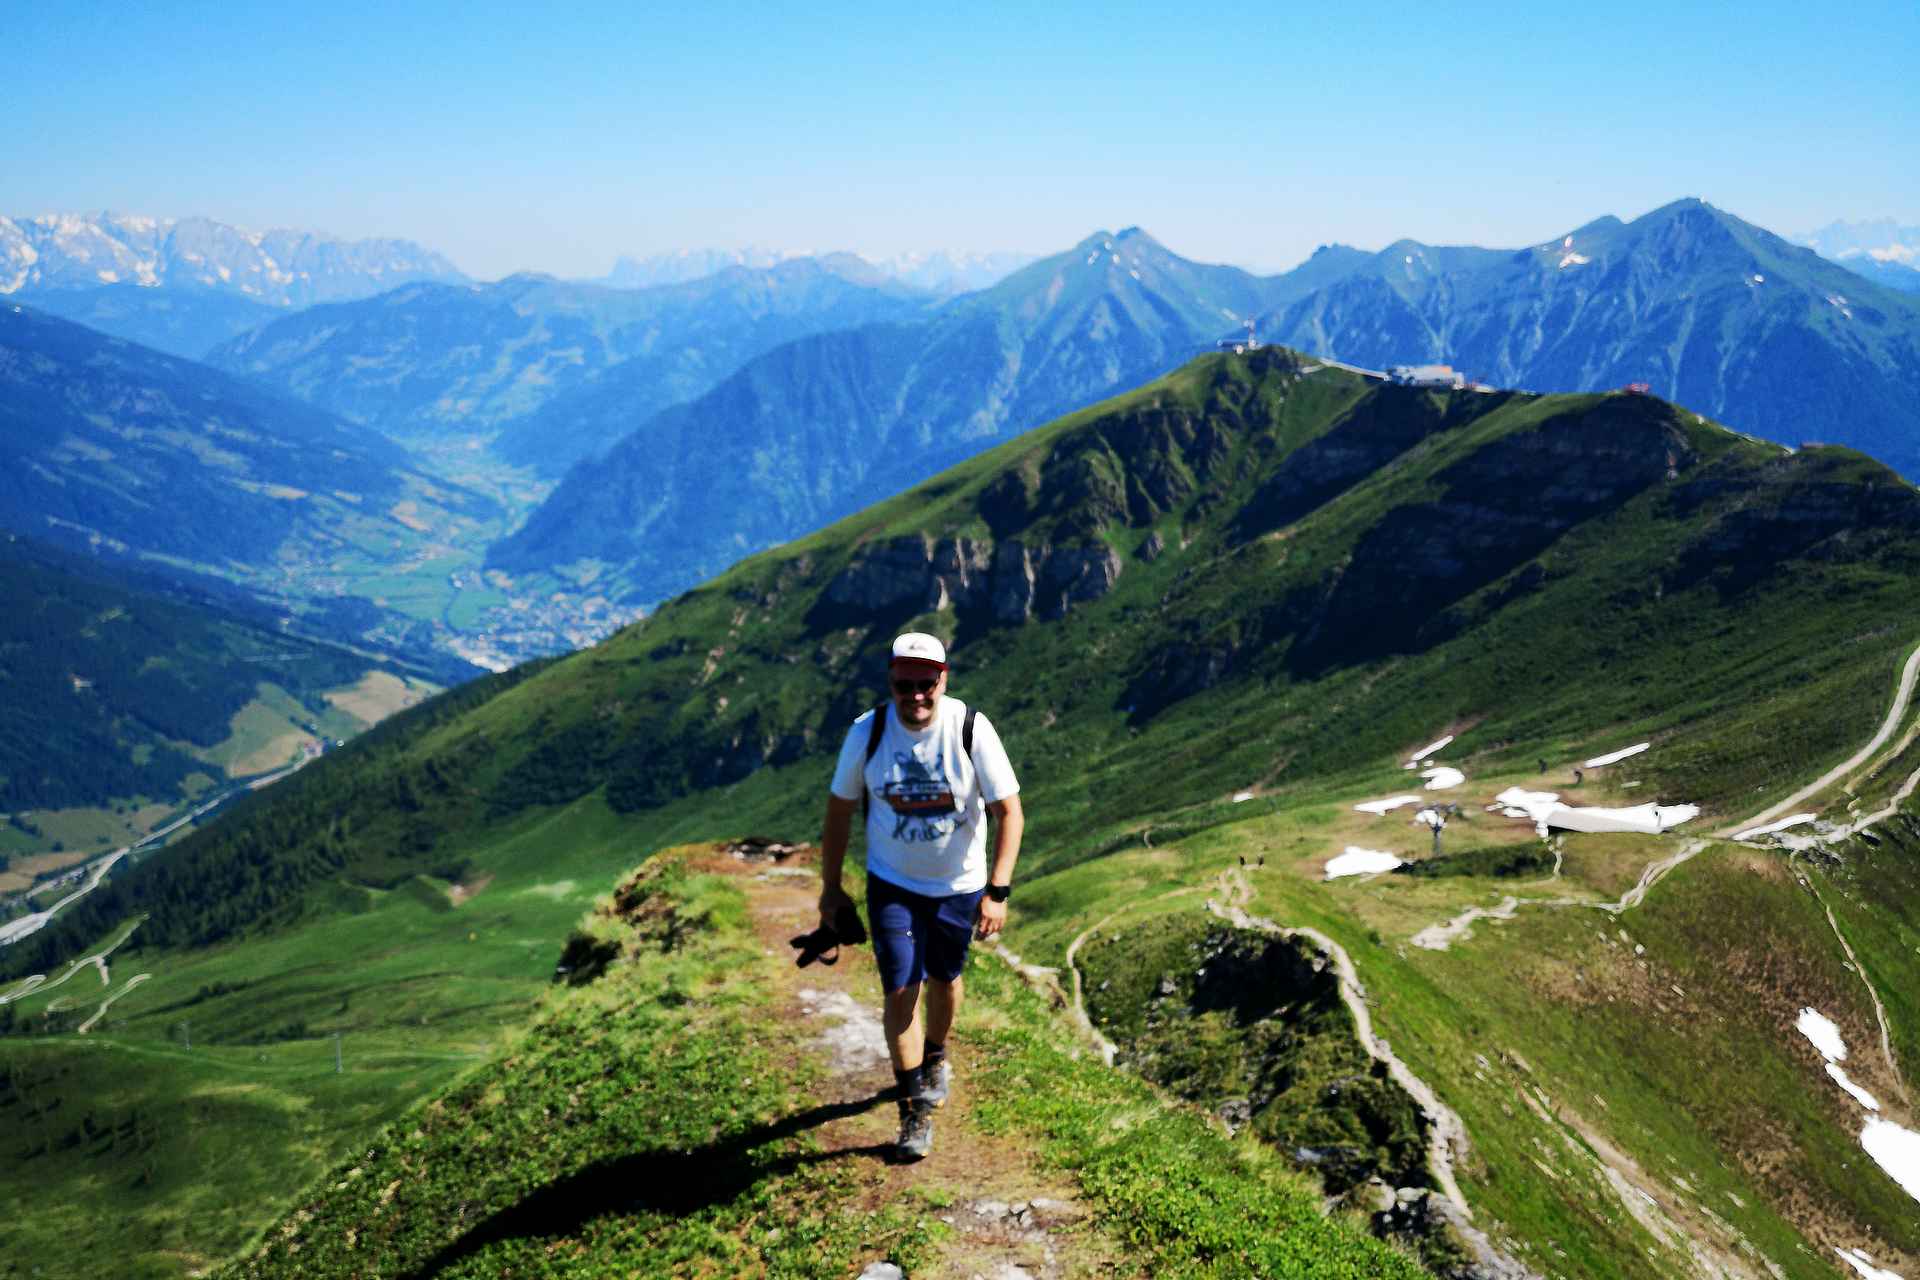 Itävallan Alpit ja Gasteinin laakso on patikoijan unelmakohde.